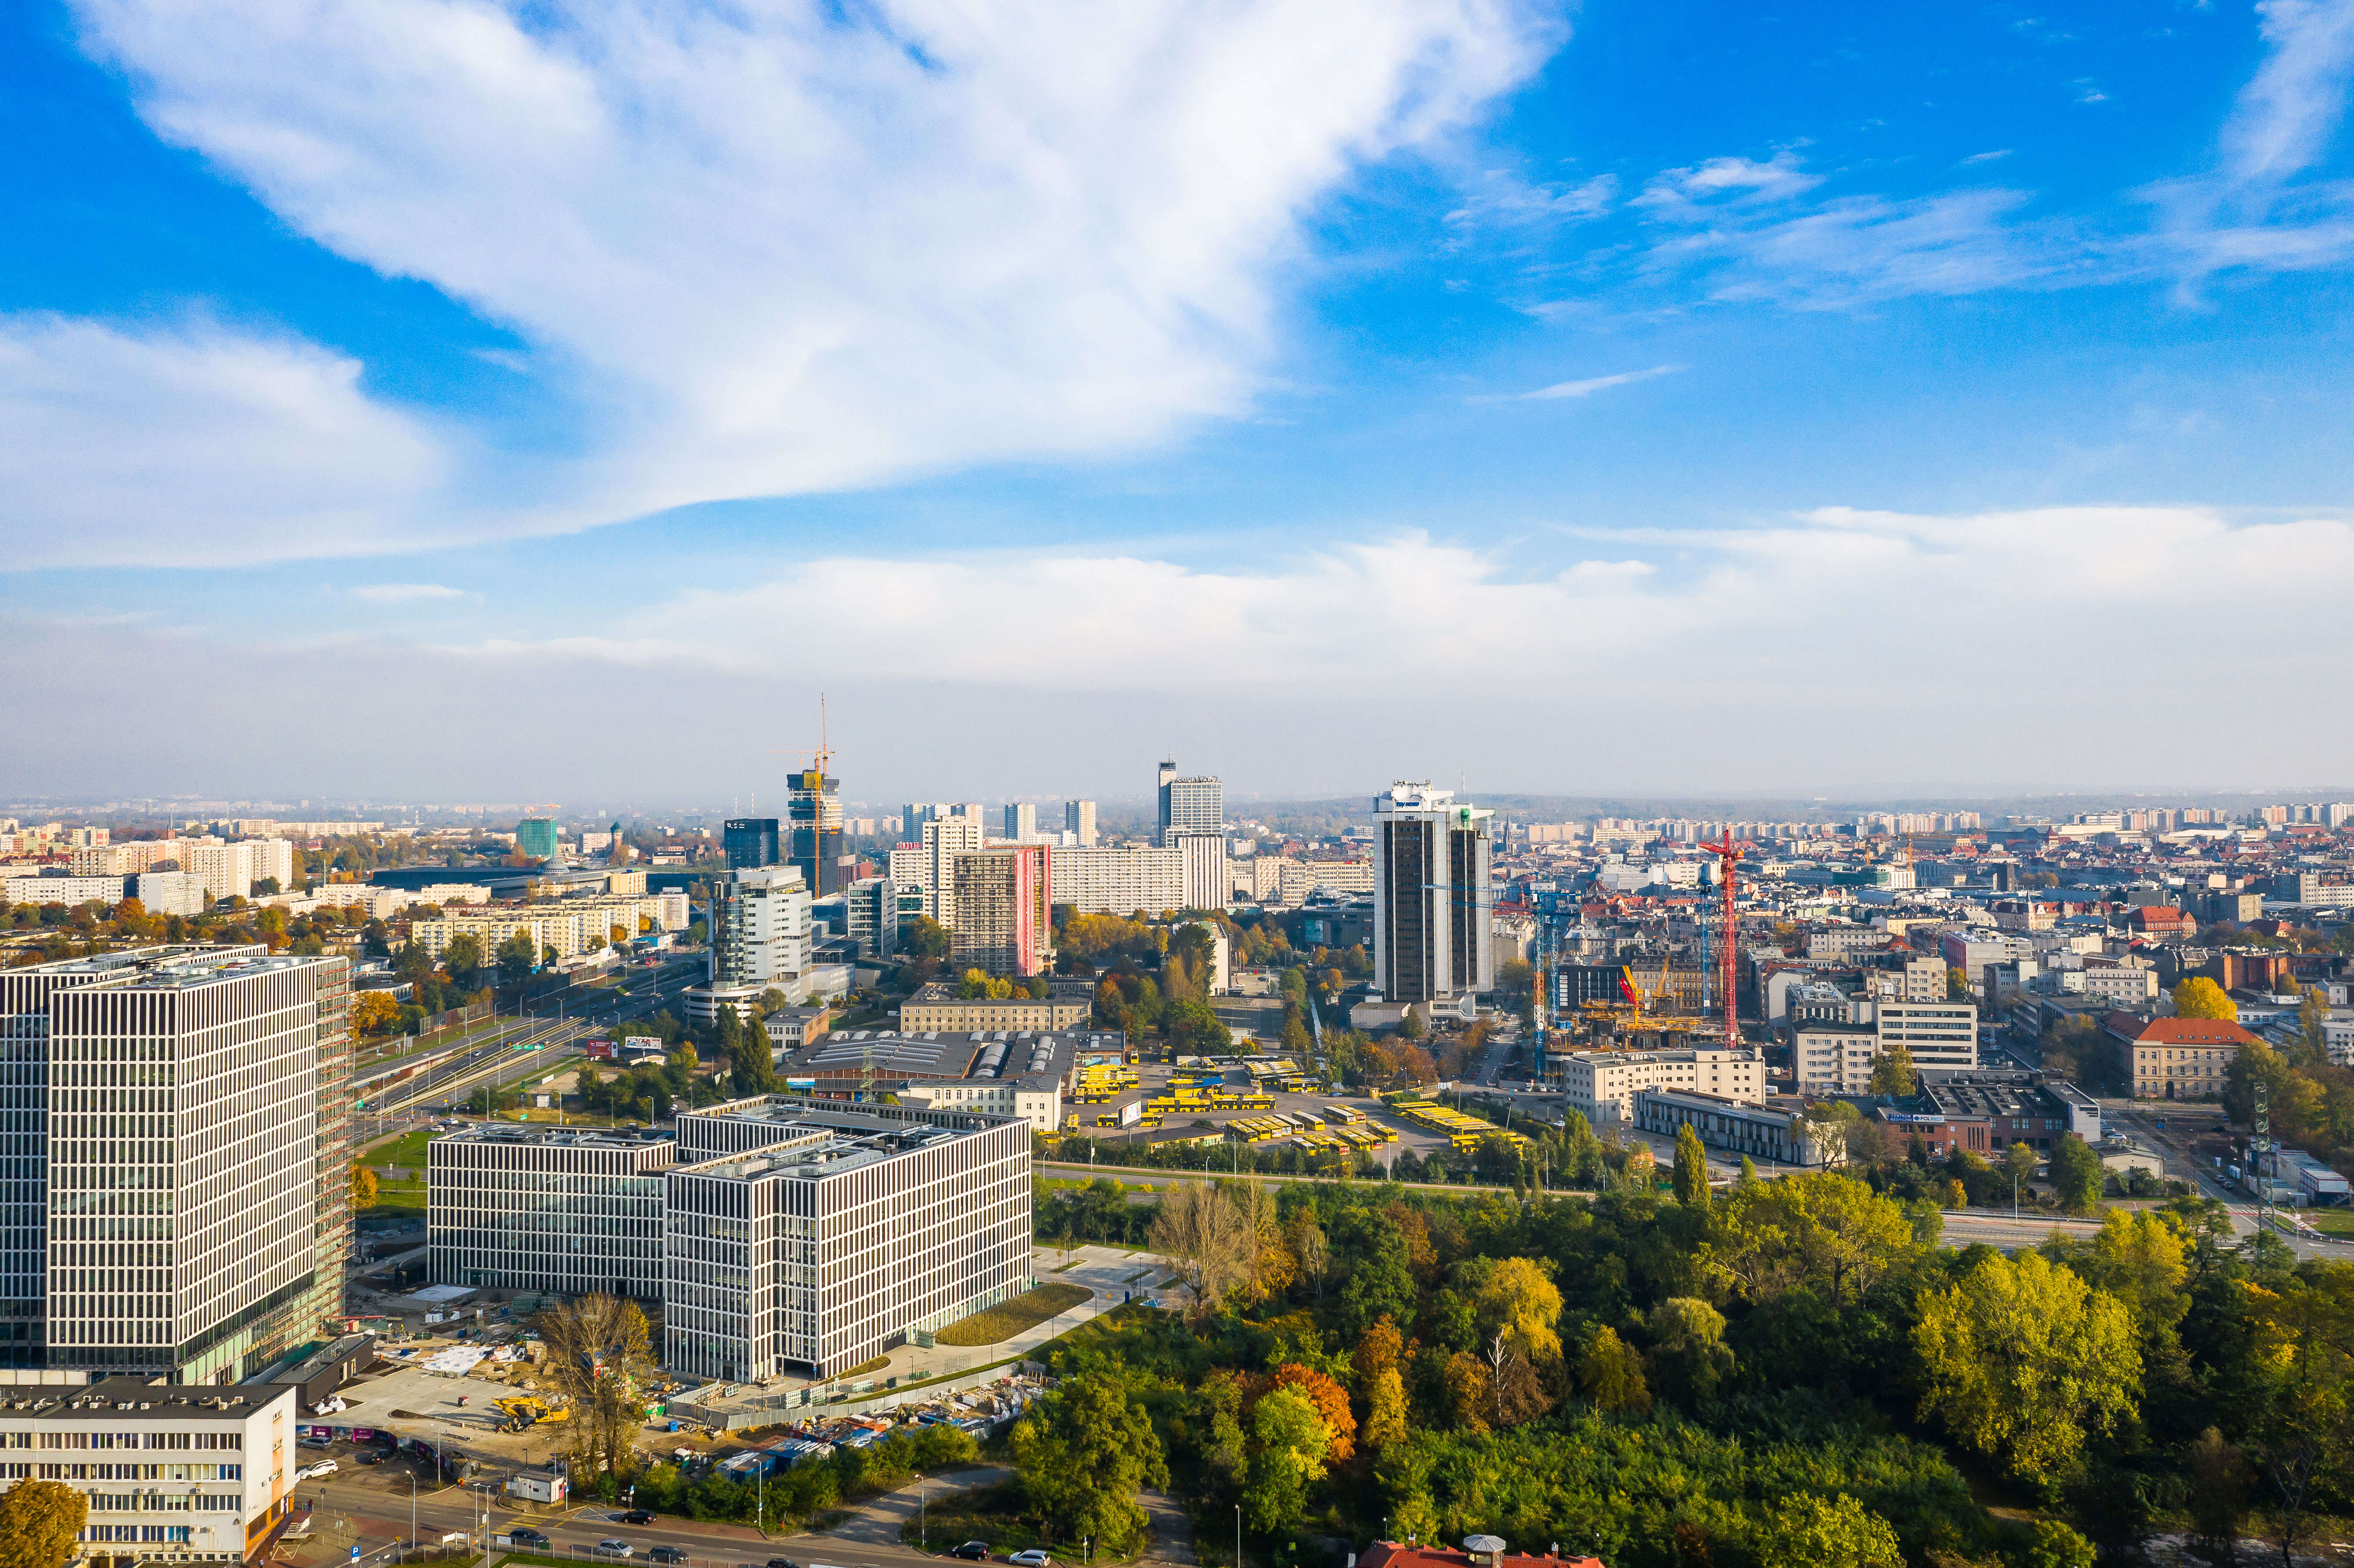 The Katowice skyline.